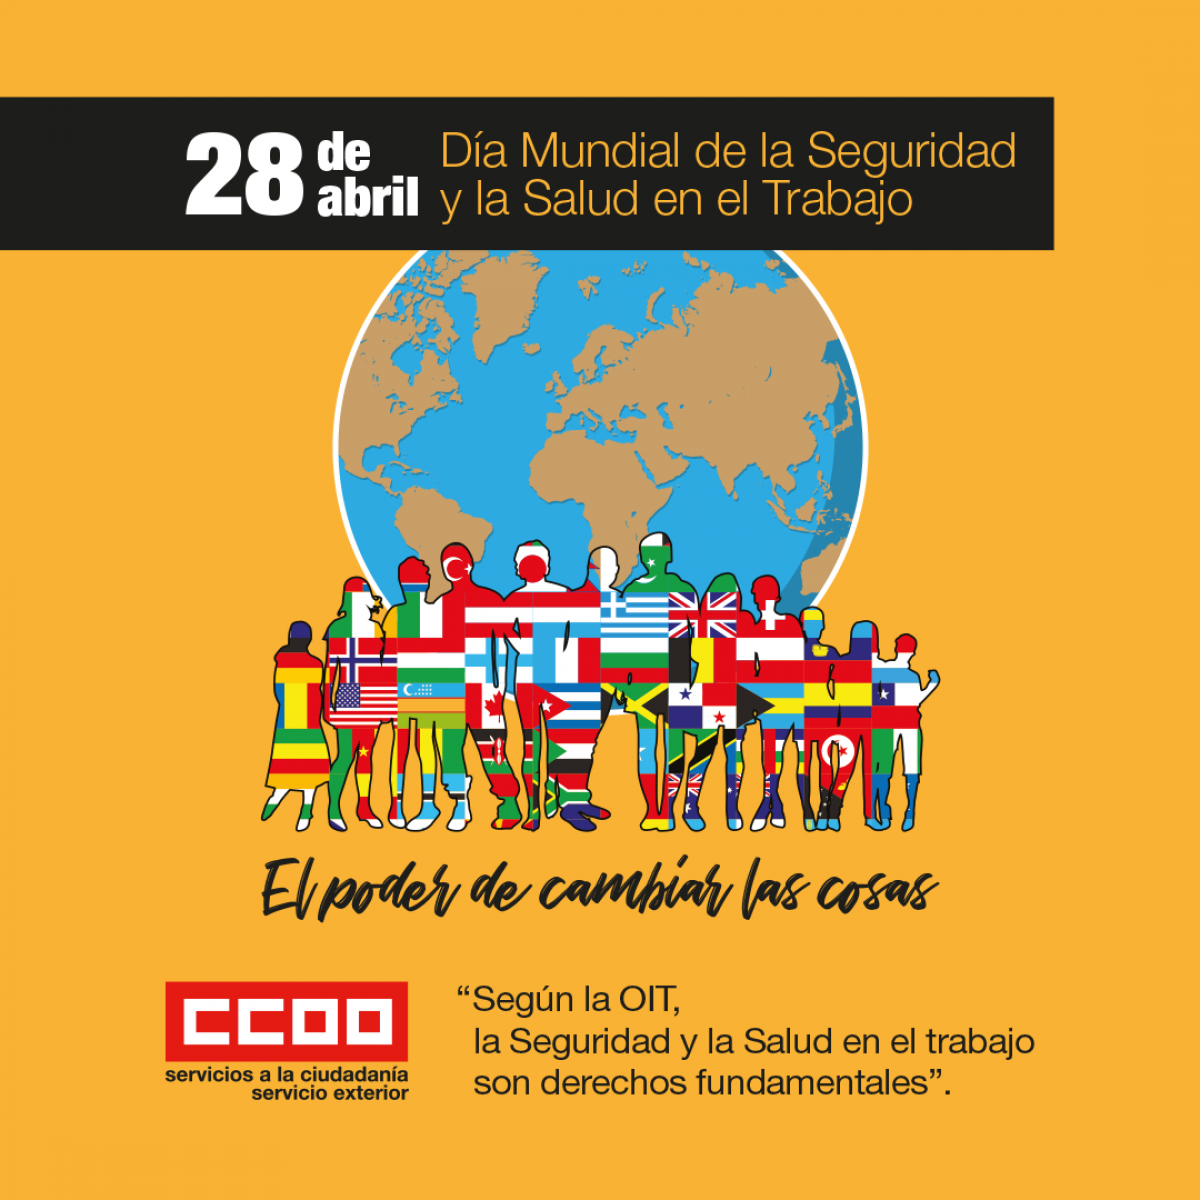 28ABRIL "Da Mundial de la Seguridad y la Salud en el Trabajo"